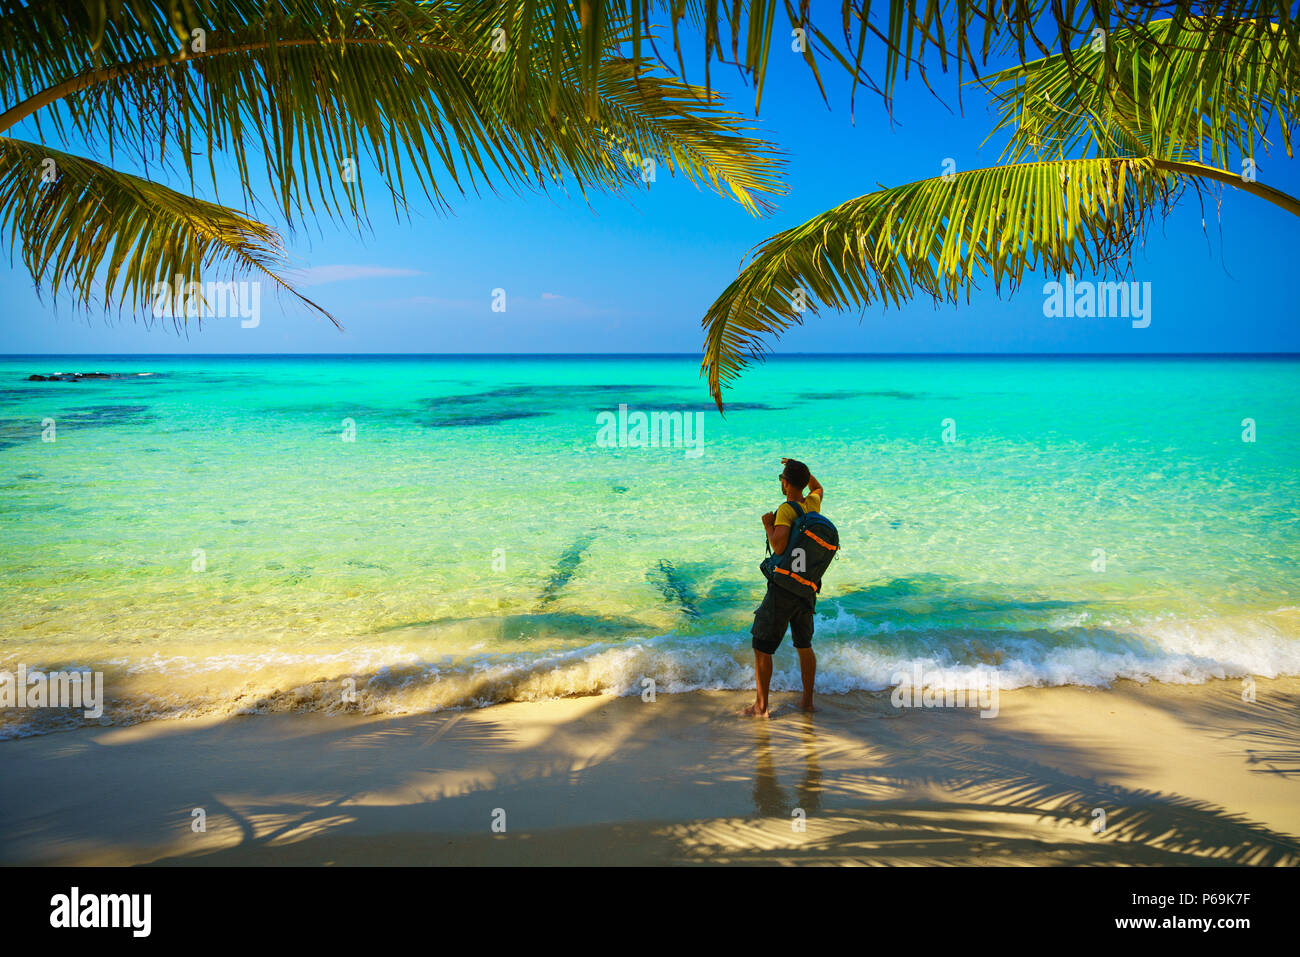 Photographe voyageur Silhouette avec sac à dos, debout près de la plage tropicale étonnante nature paysage en arrière-plan Banque D'Images